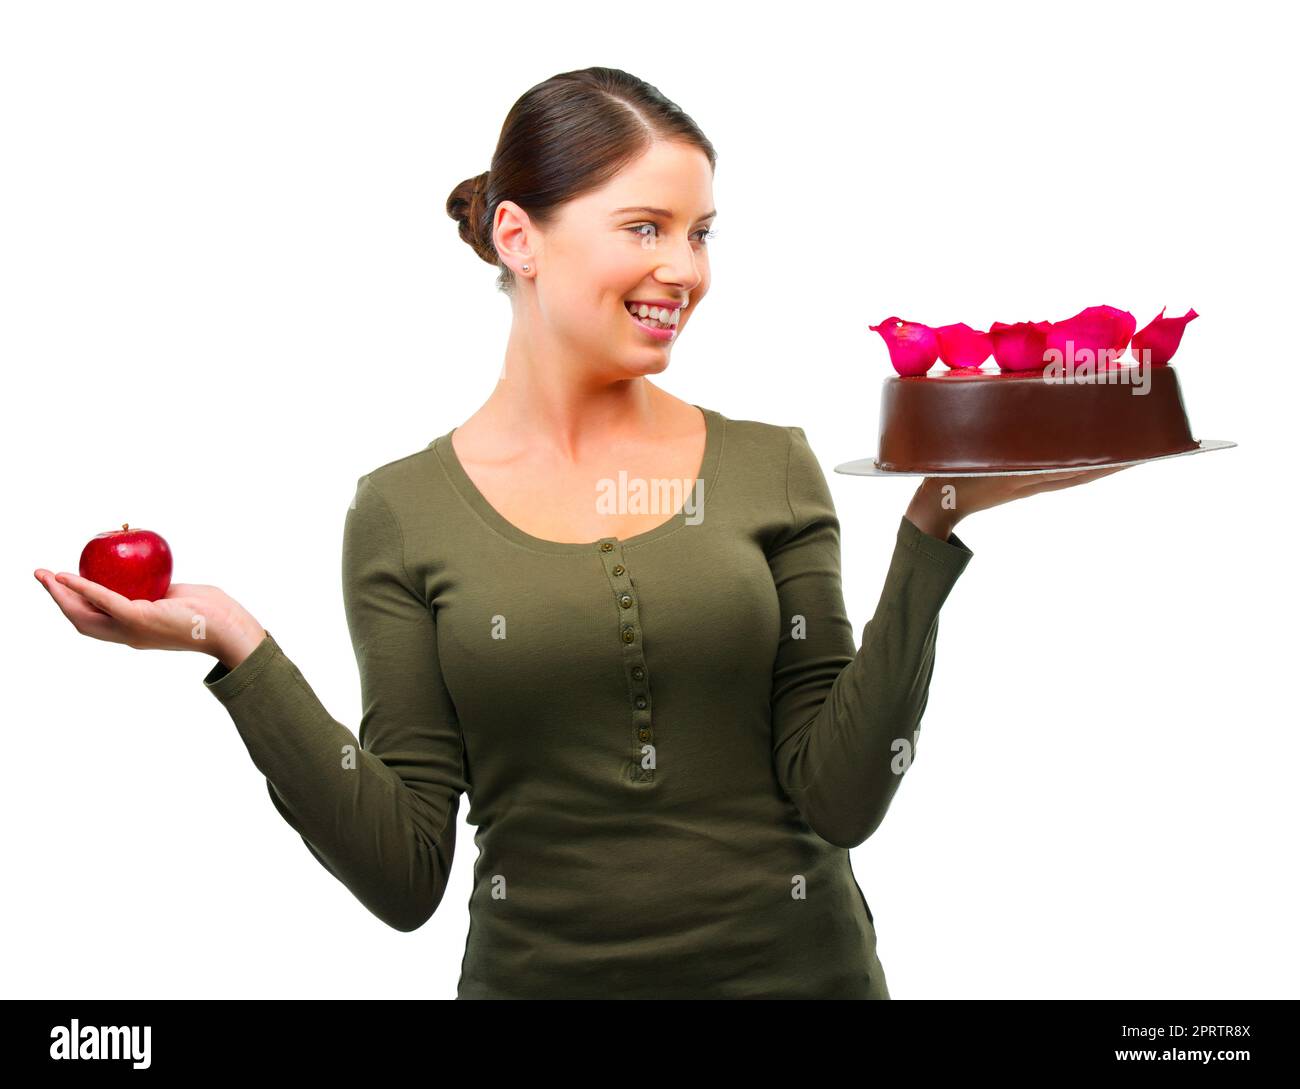 Das Bedürfnis zu frönen. Studioaufnahme einer jungen Frau, die sich zwischen einem Apfel und einem auf Weiß isolierten Kuchen entscheidet. Stockfoto